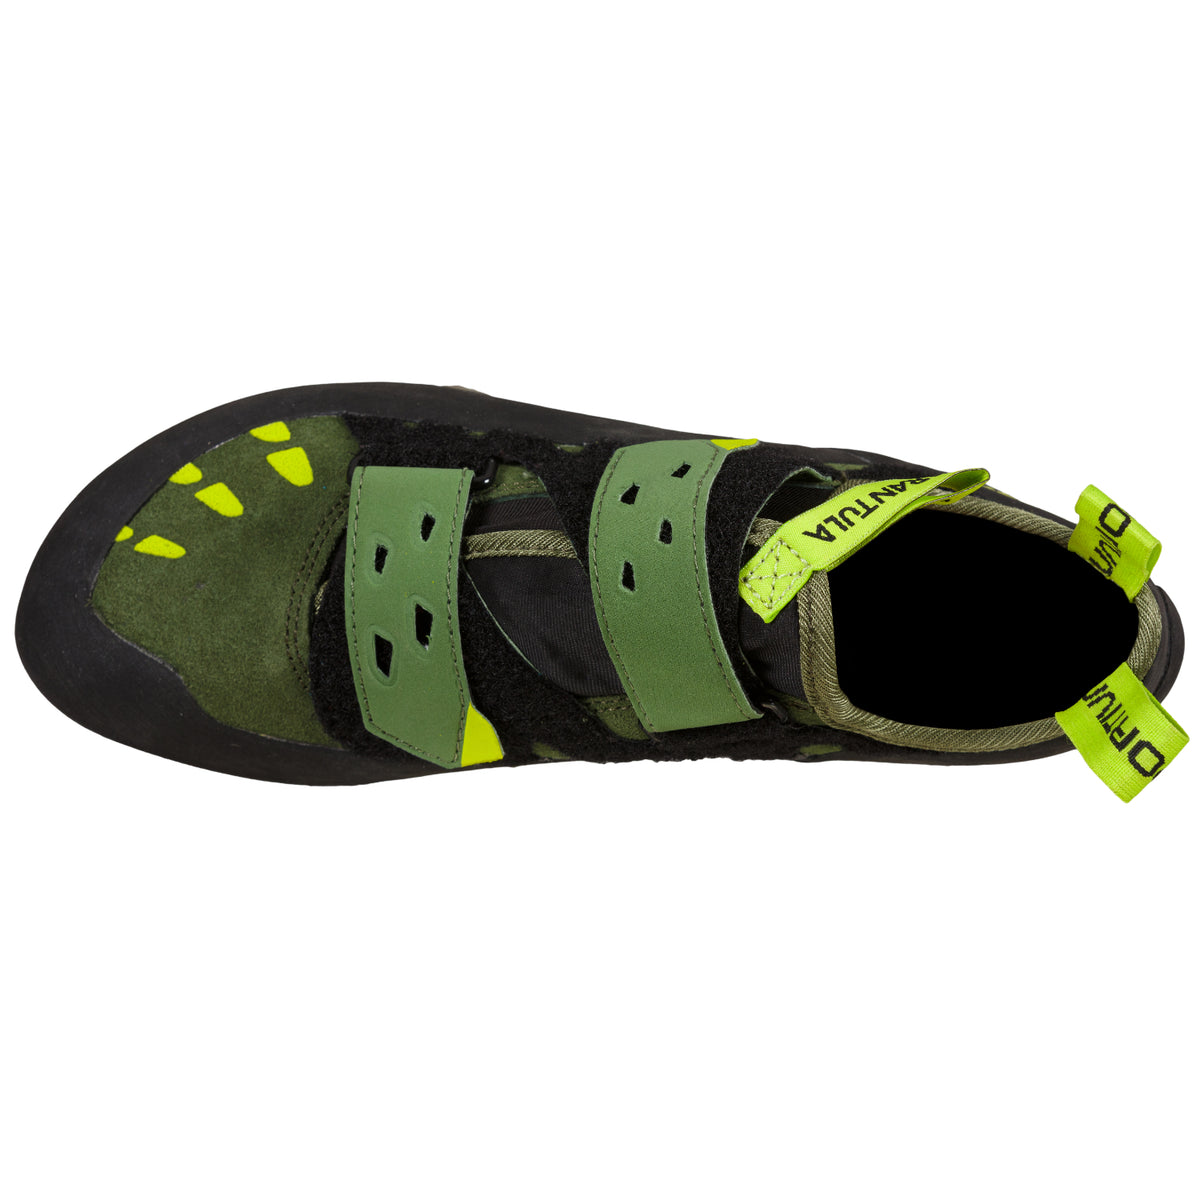 La Sportiva Tarantula in olive/neon colour showing toe and velcro straps